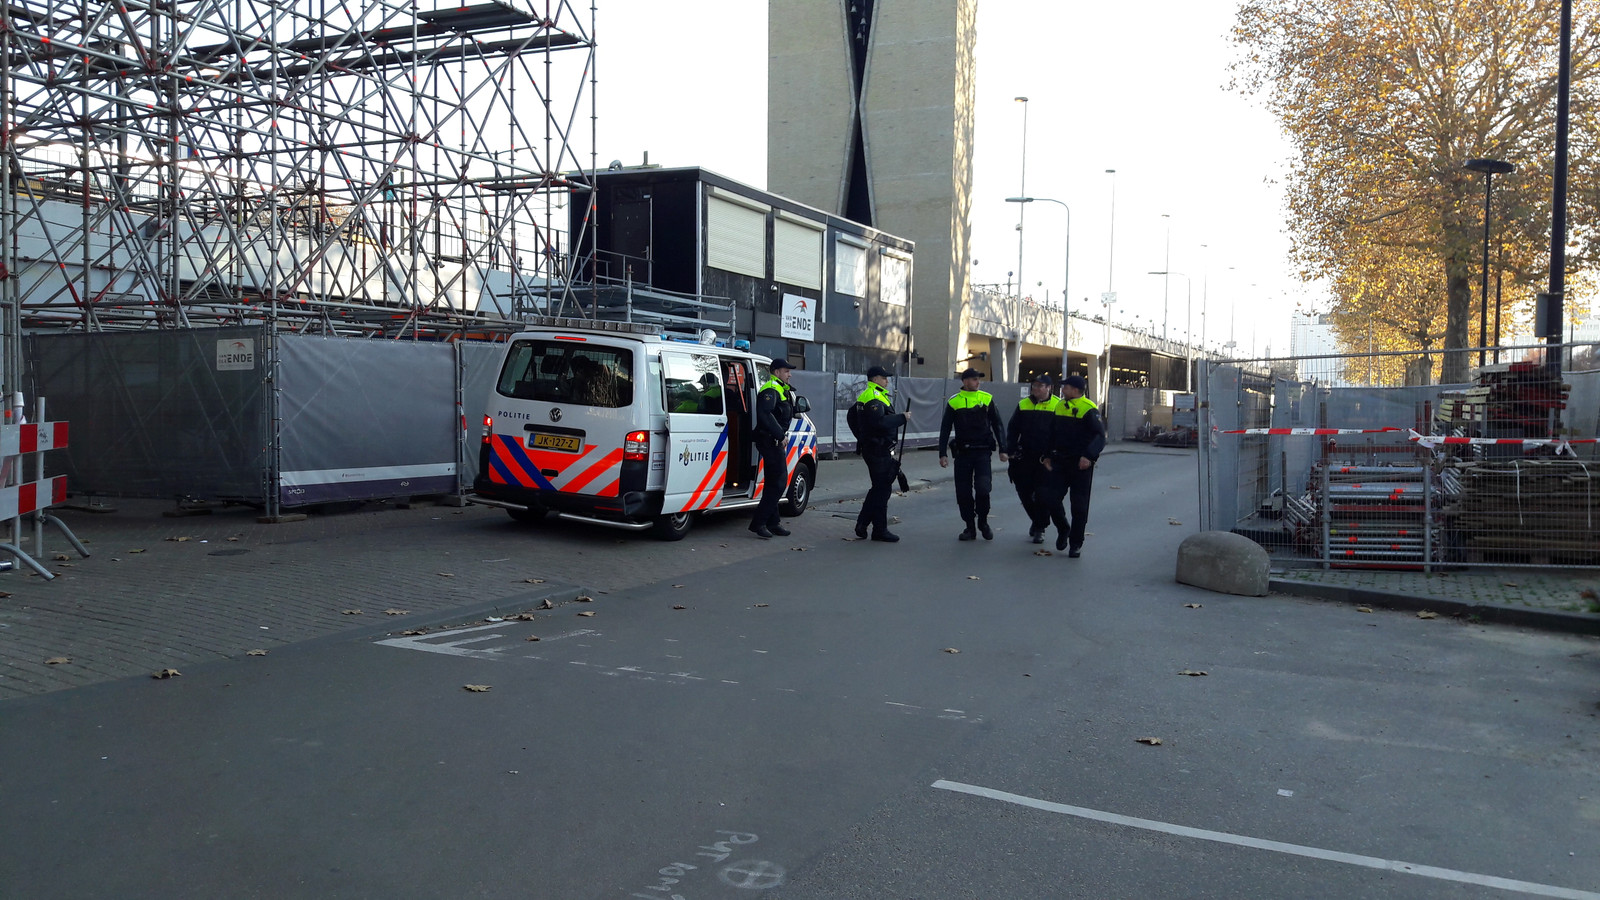 Politie rond station Tilburg, een uur voor de intocht van Sinterklaas begint in de Piushaven.